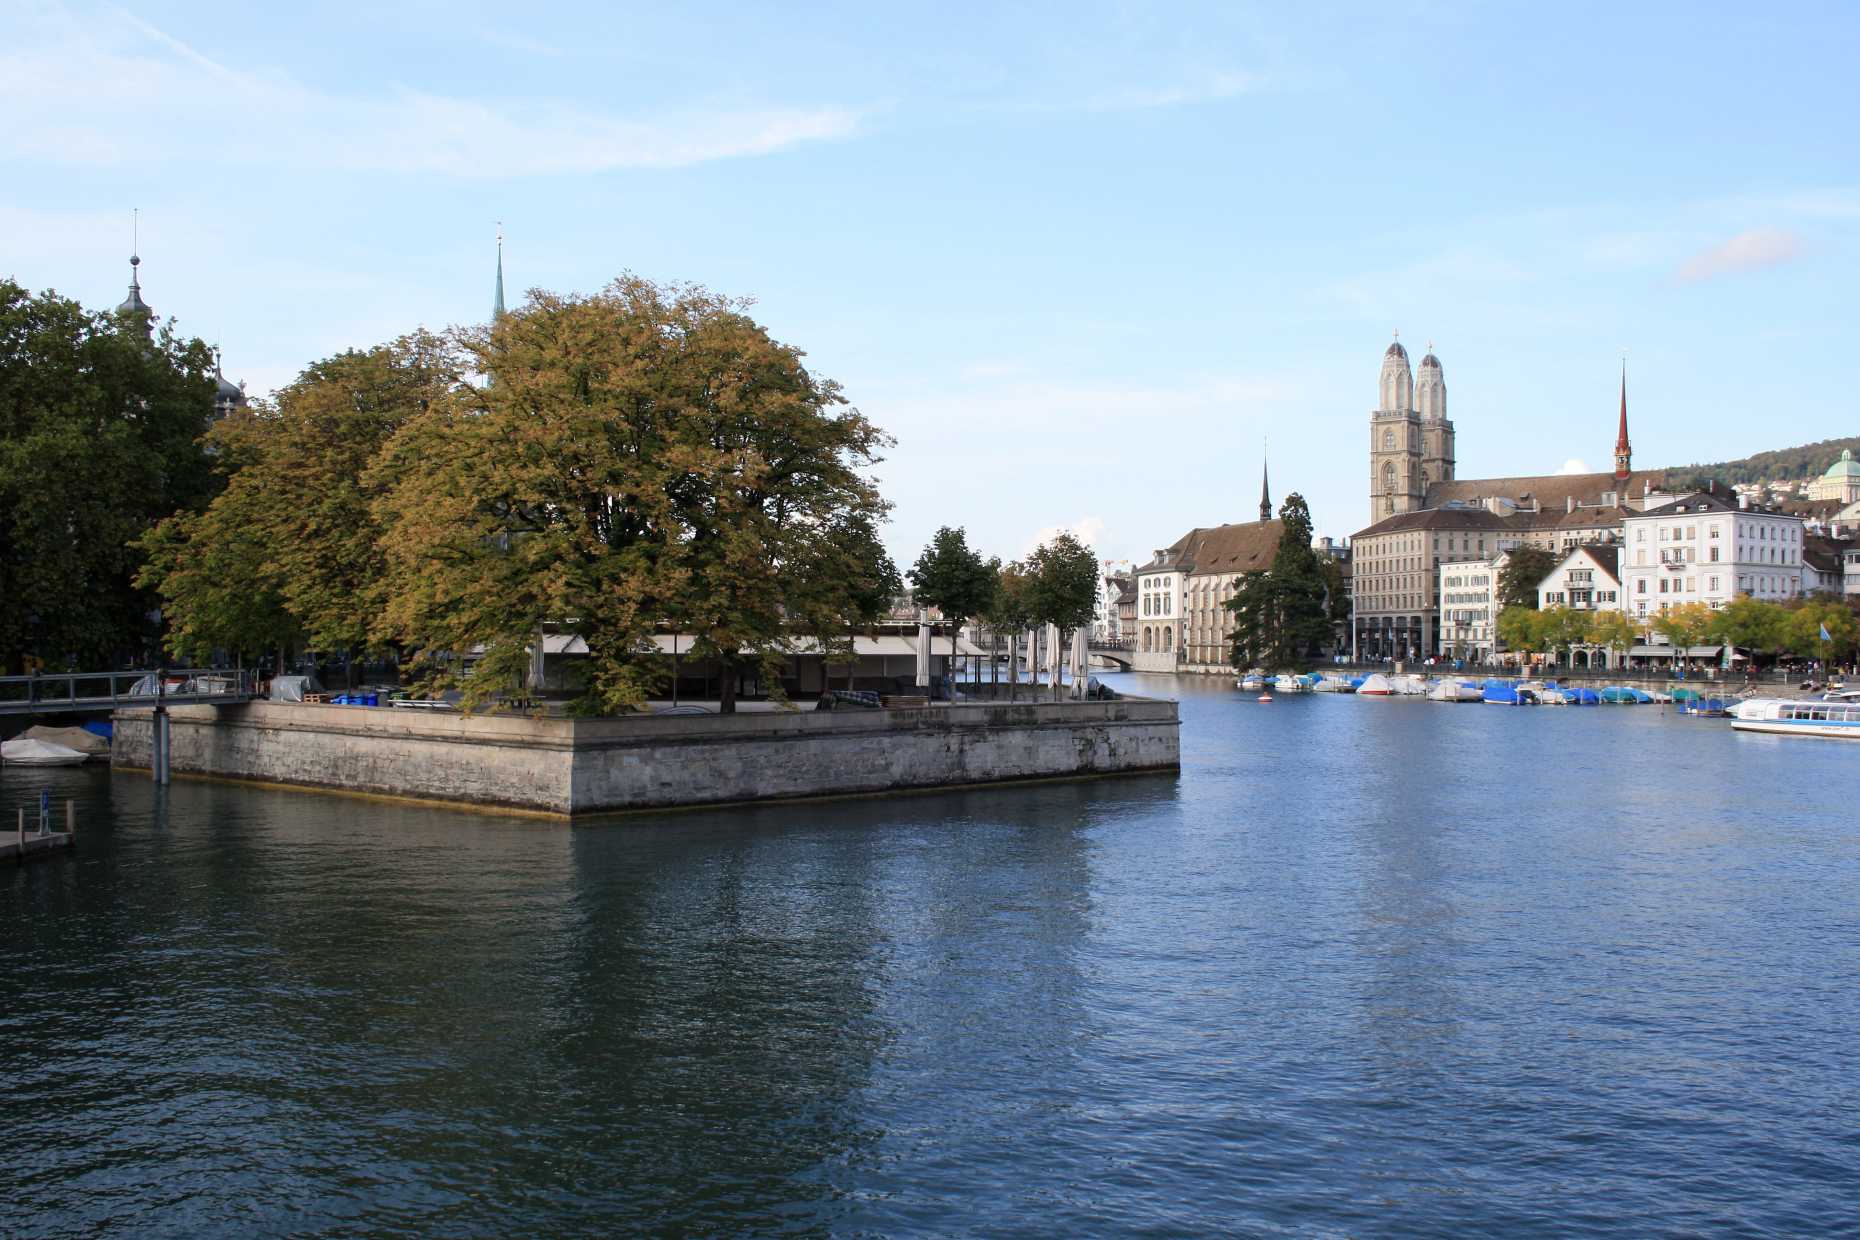 Enlarged view: Zurich town center